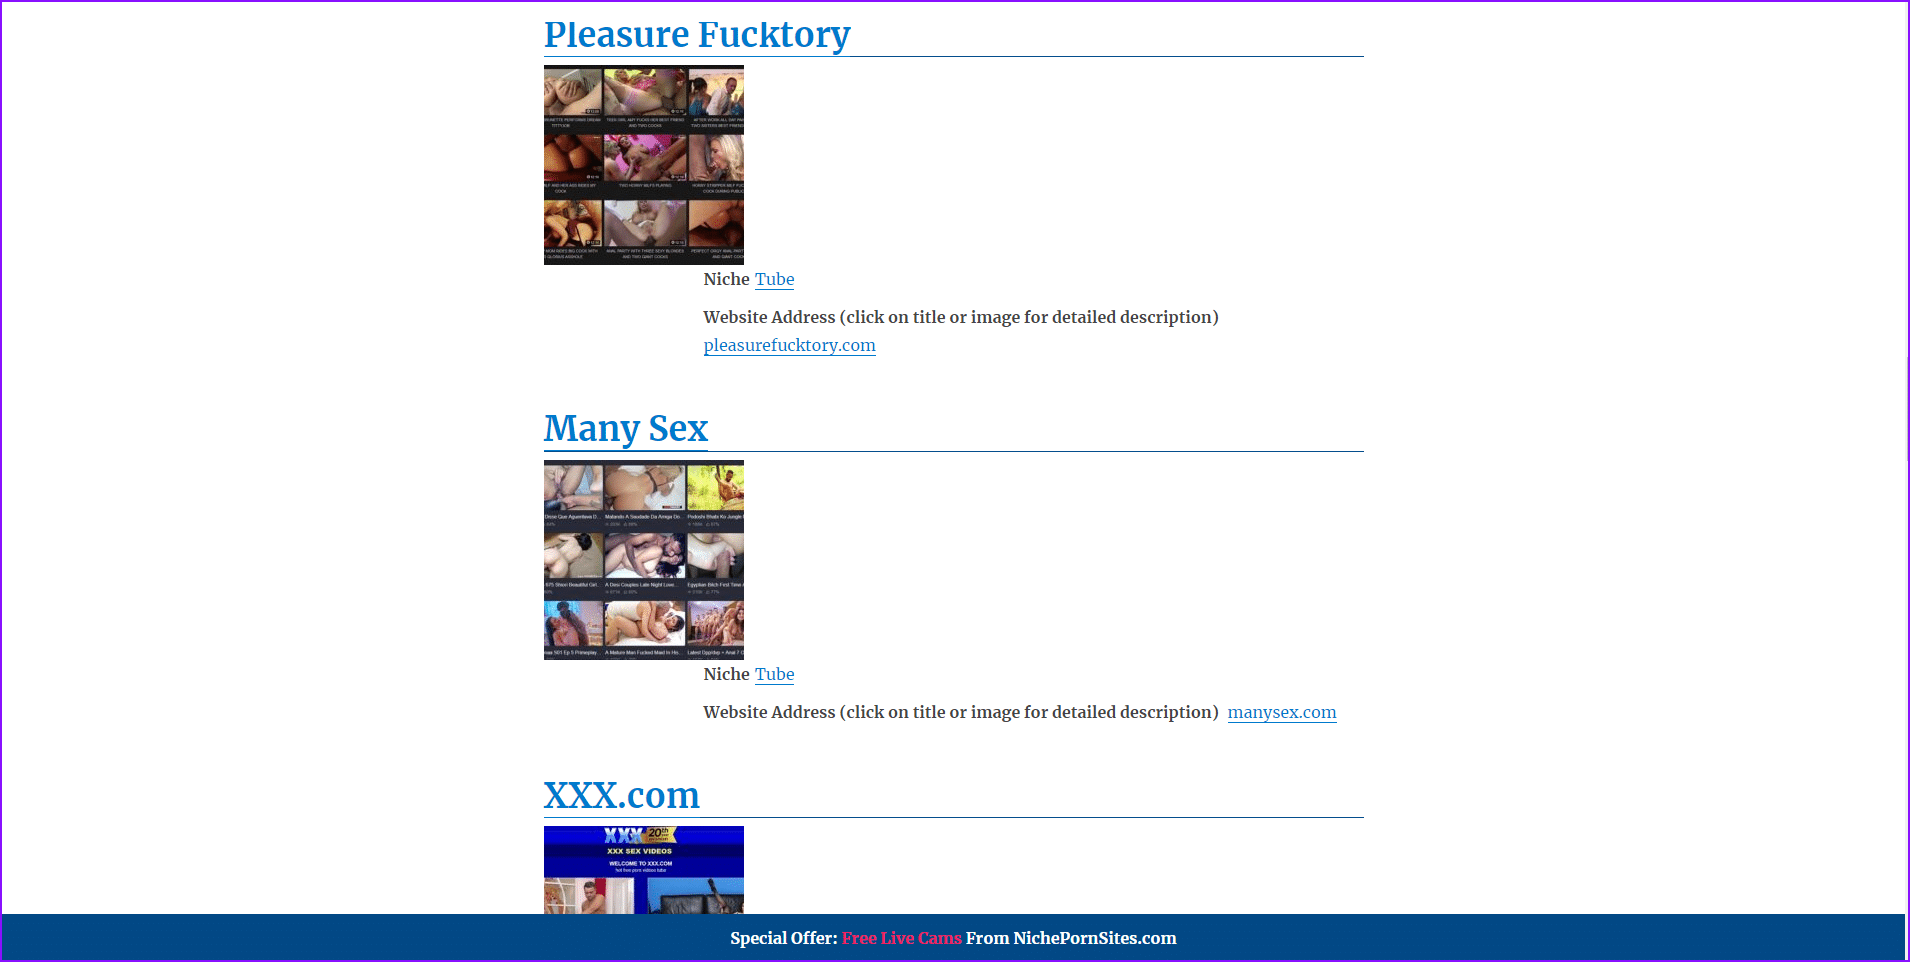 Niszowe strony porno i lista 12 najlepszych witryn pornograficznych i witryn dla dorosłych oraz katalogi, takie jak Nichepornsites